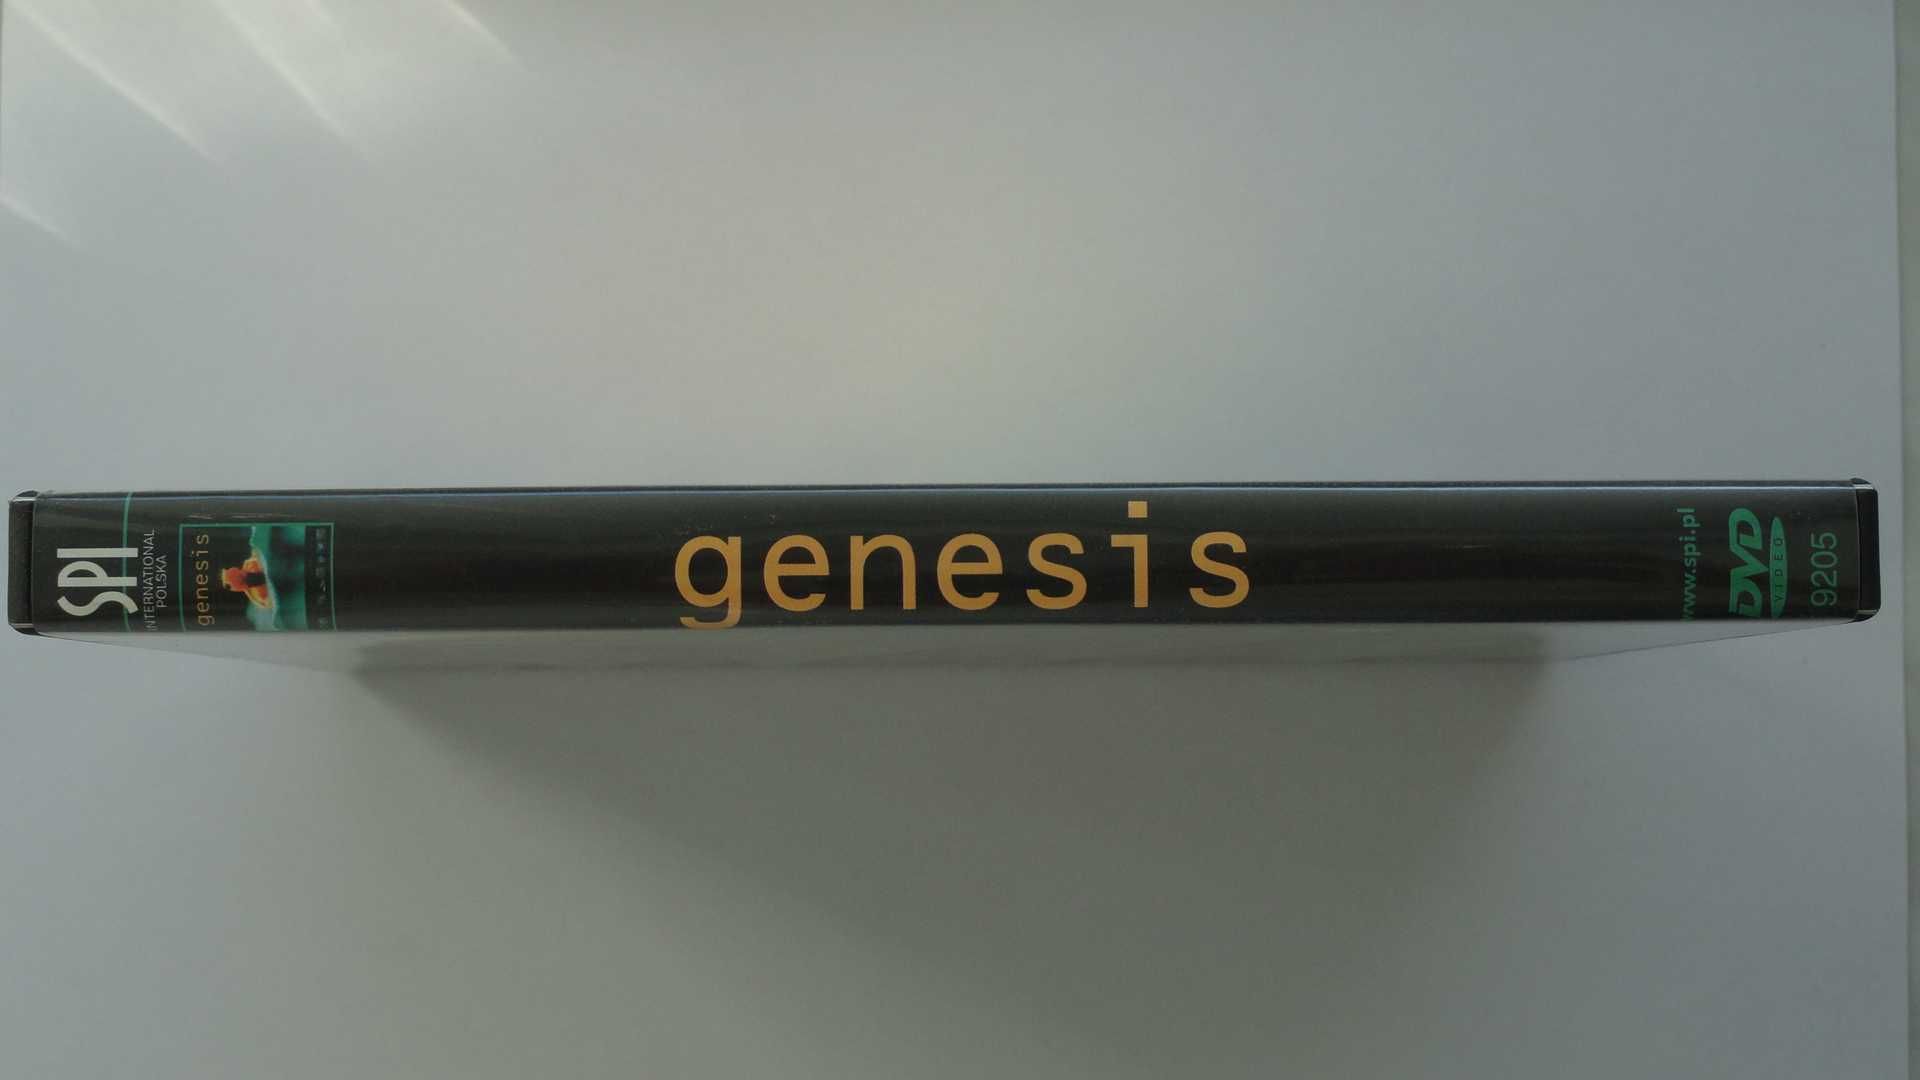 Film: "Genesis" DVD - Kim jesteśmy i skąd pochodzimy? - stan idealny